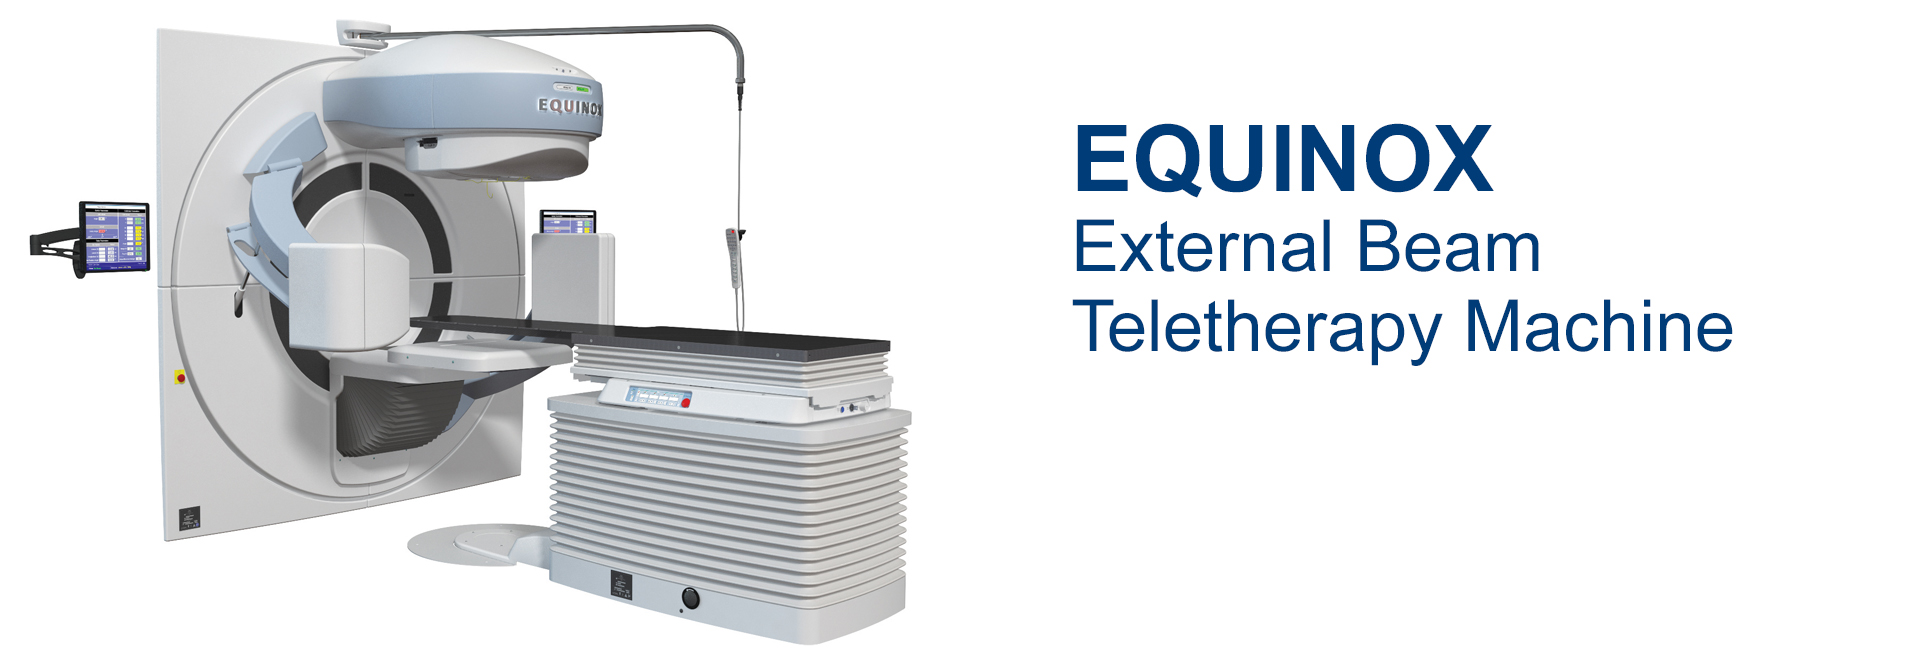 Equinox External Beam Teletherapy Machine